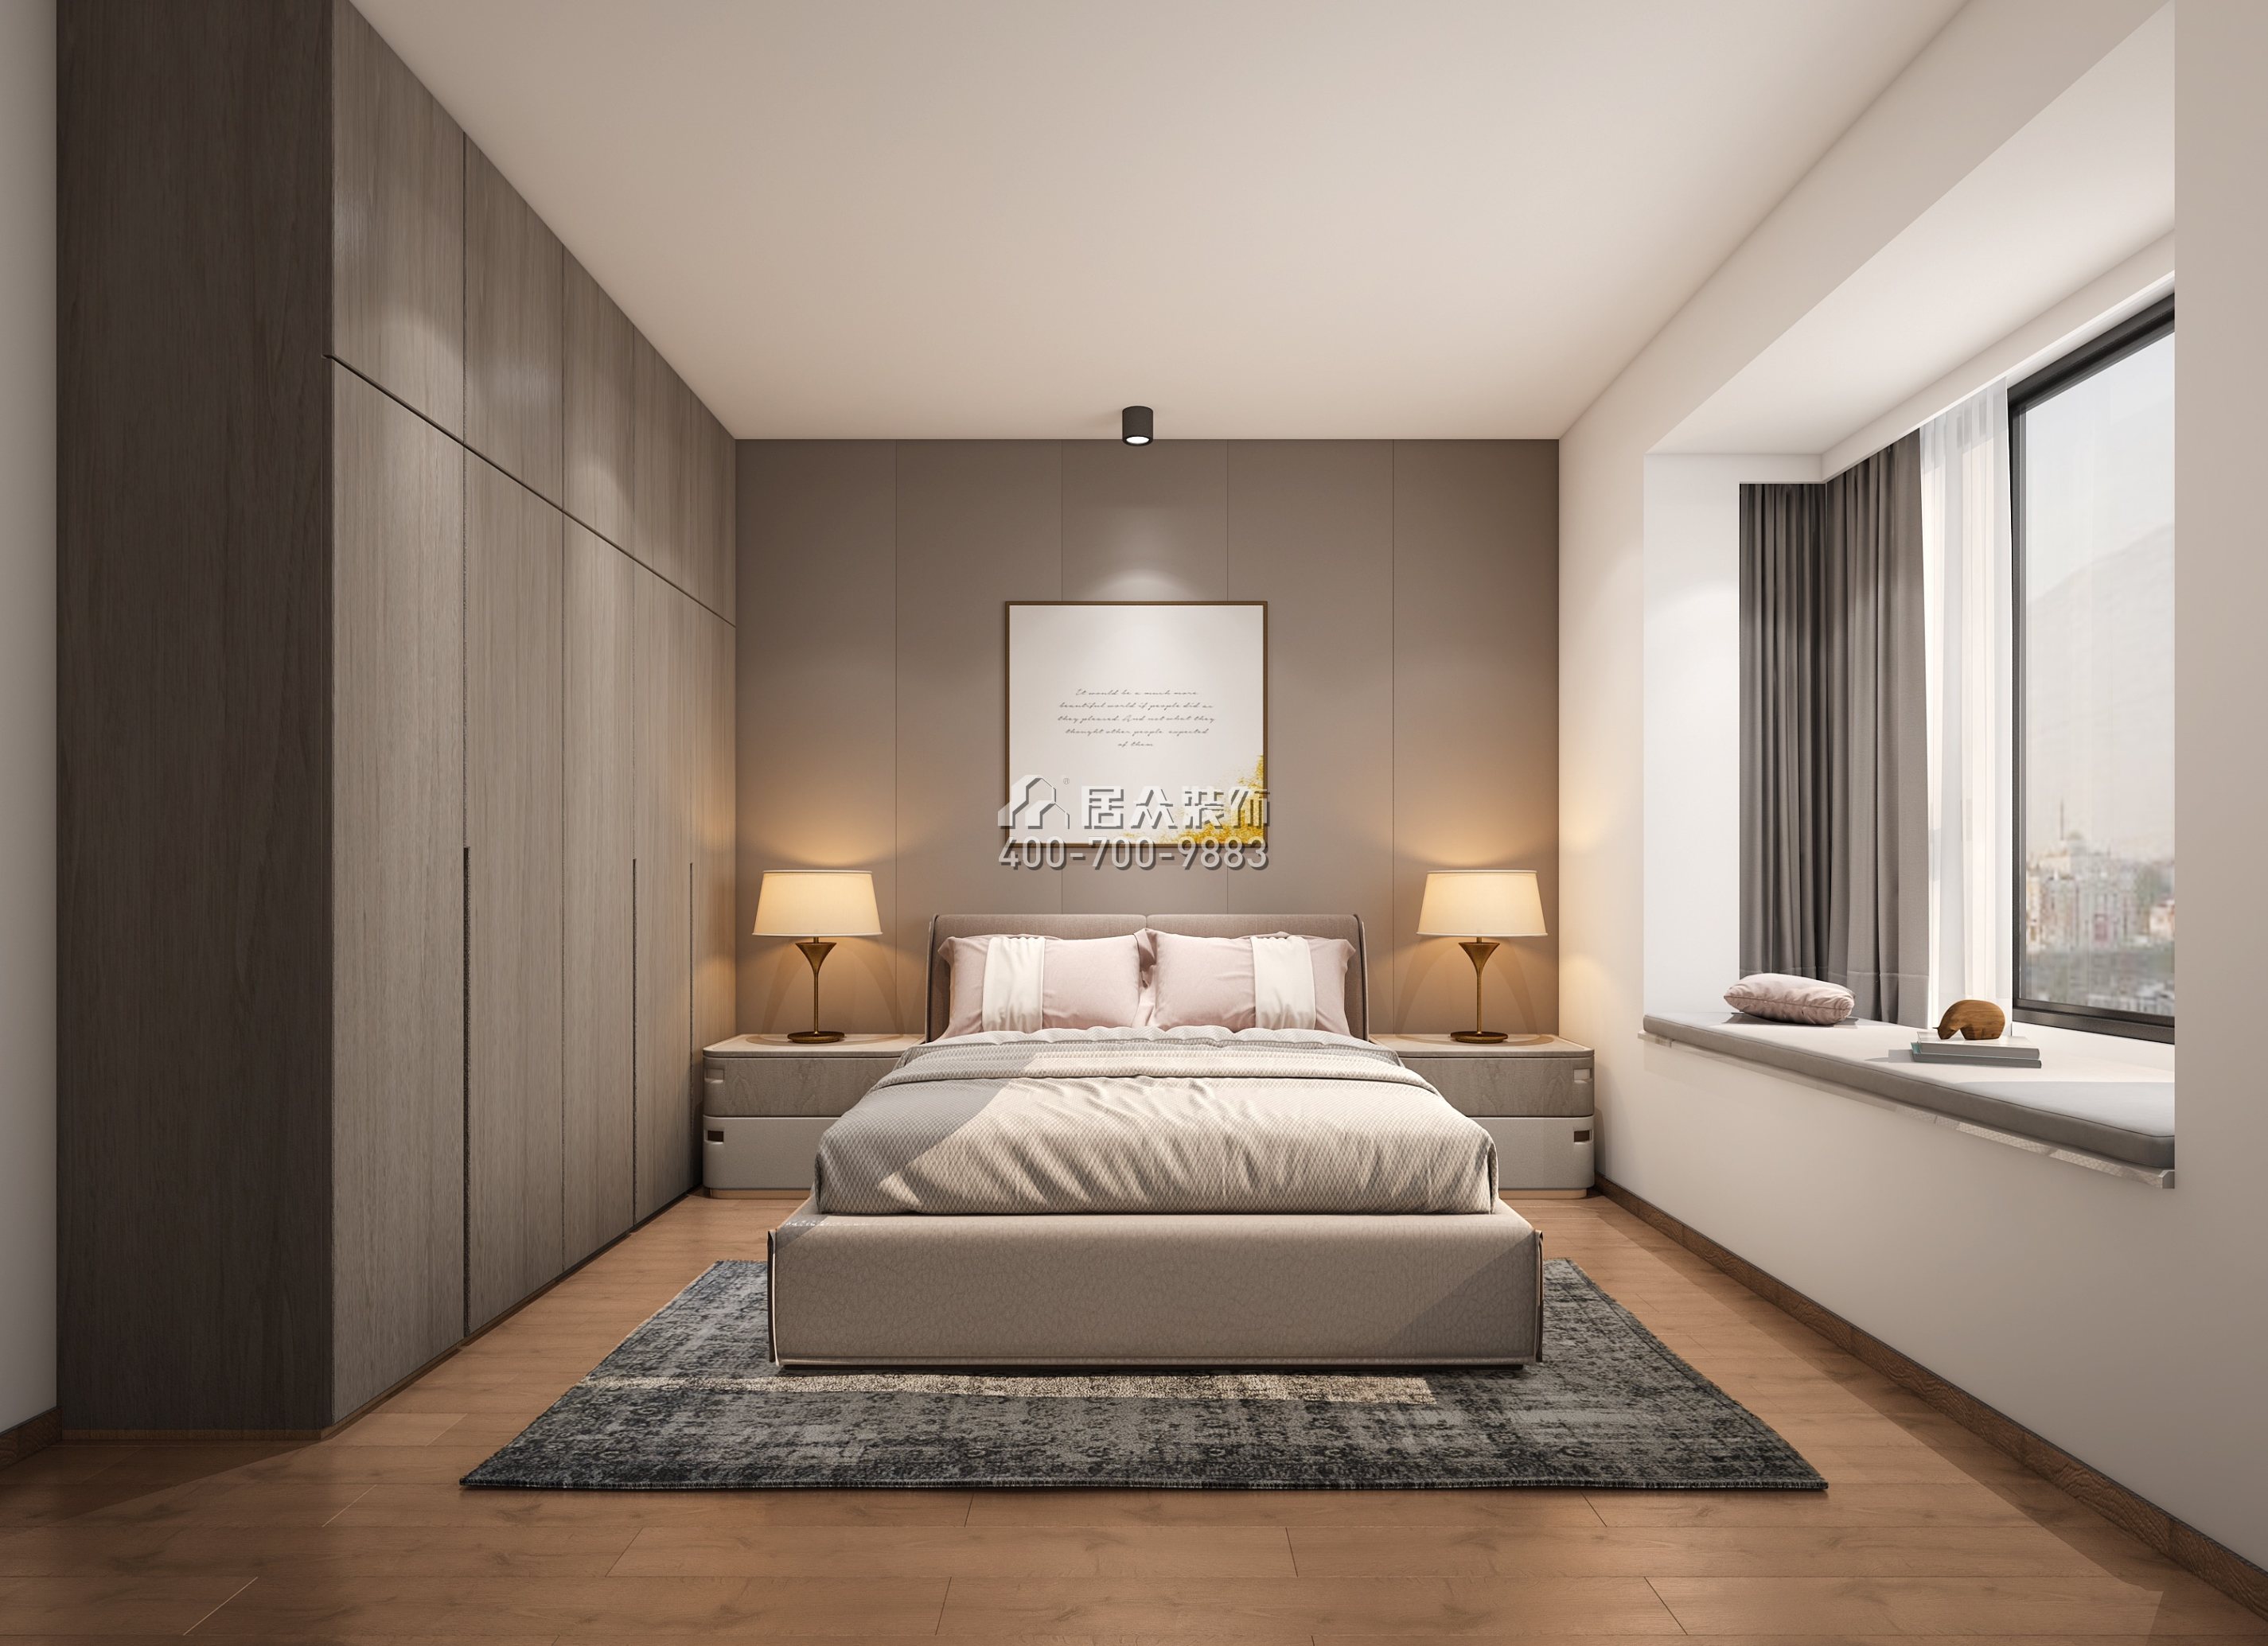 福宇軒110平方米現代簡約風格平層戶型臥室裝修效果圖